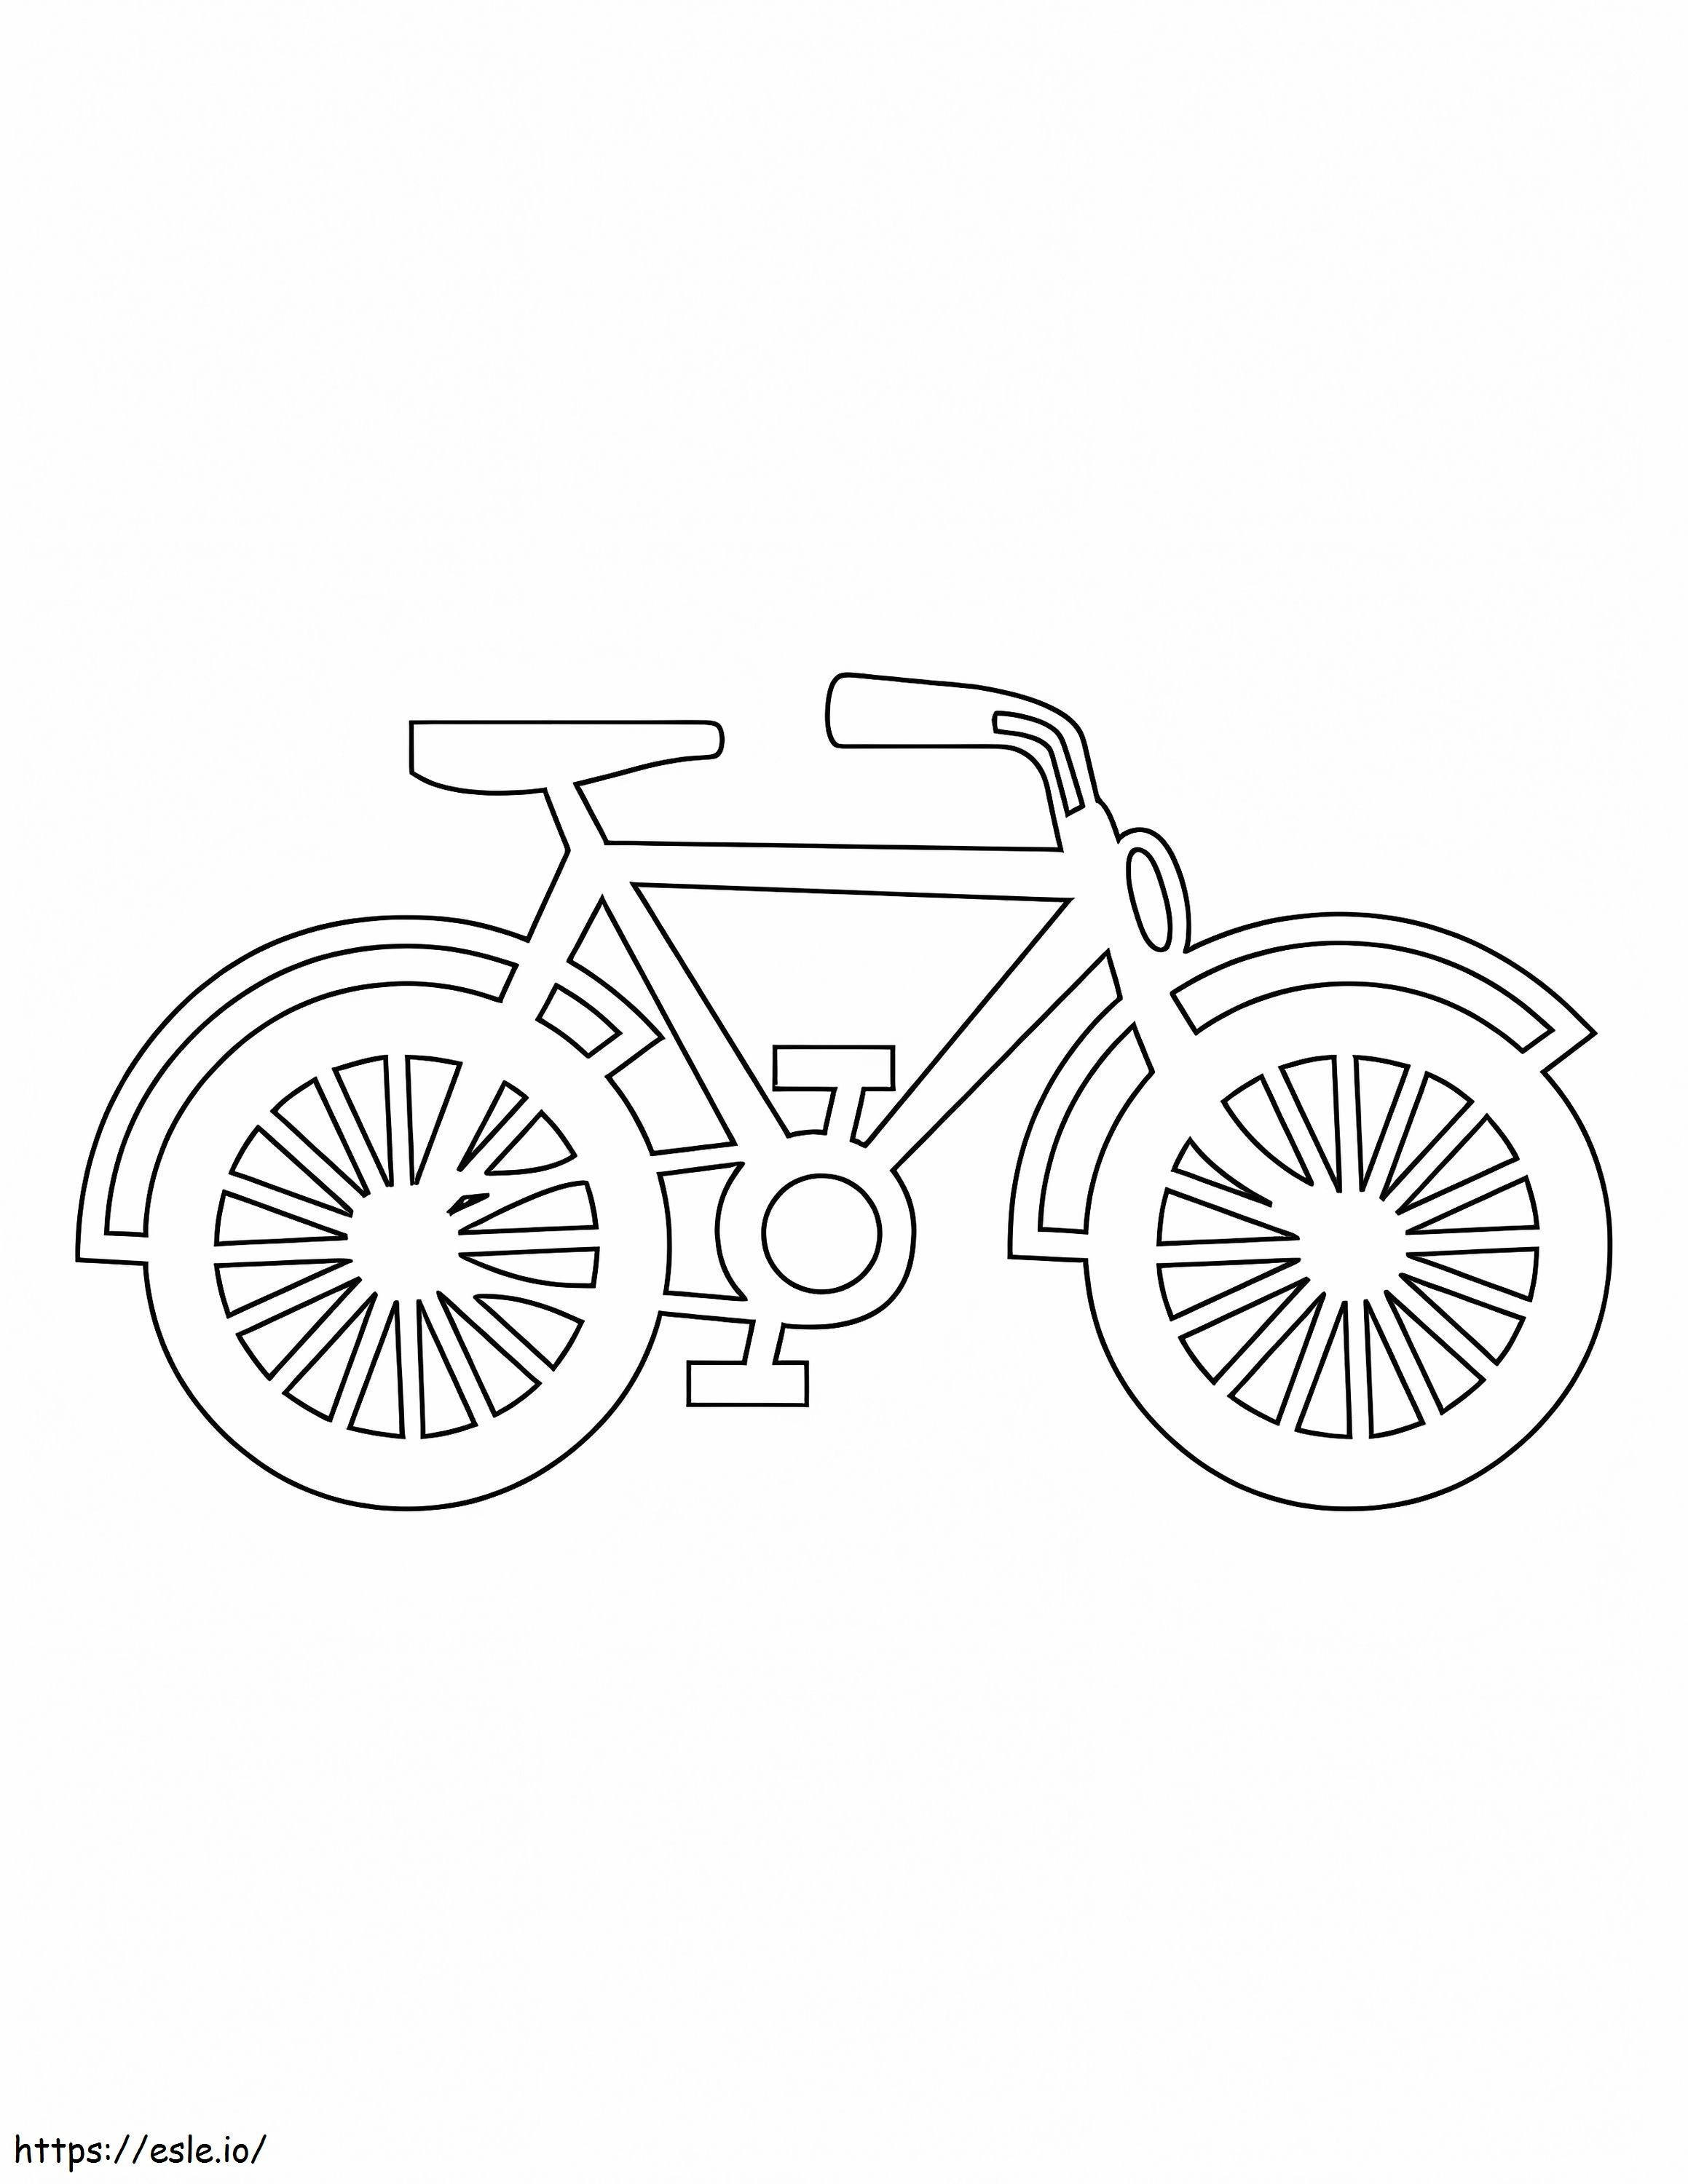 Garis Besar Sepeda Gambar Mewarnai